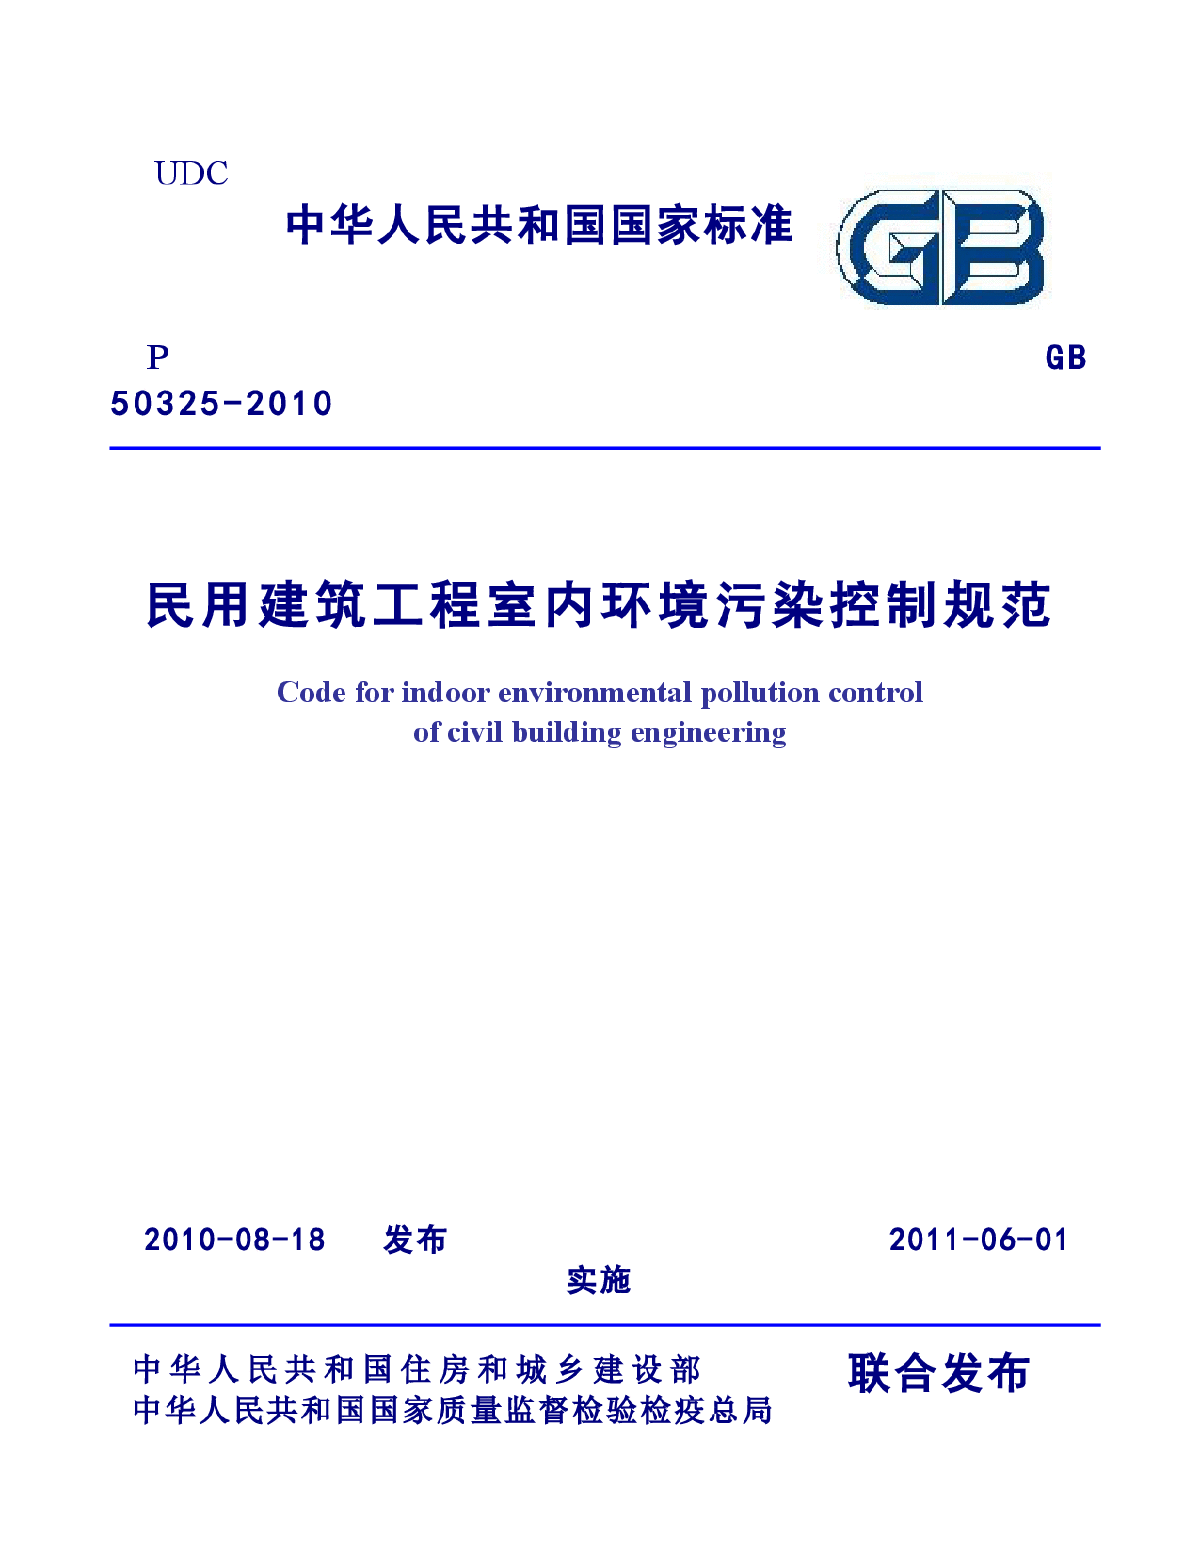 民用建筑工程室内环境污染控制规范GB 50325-2010